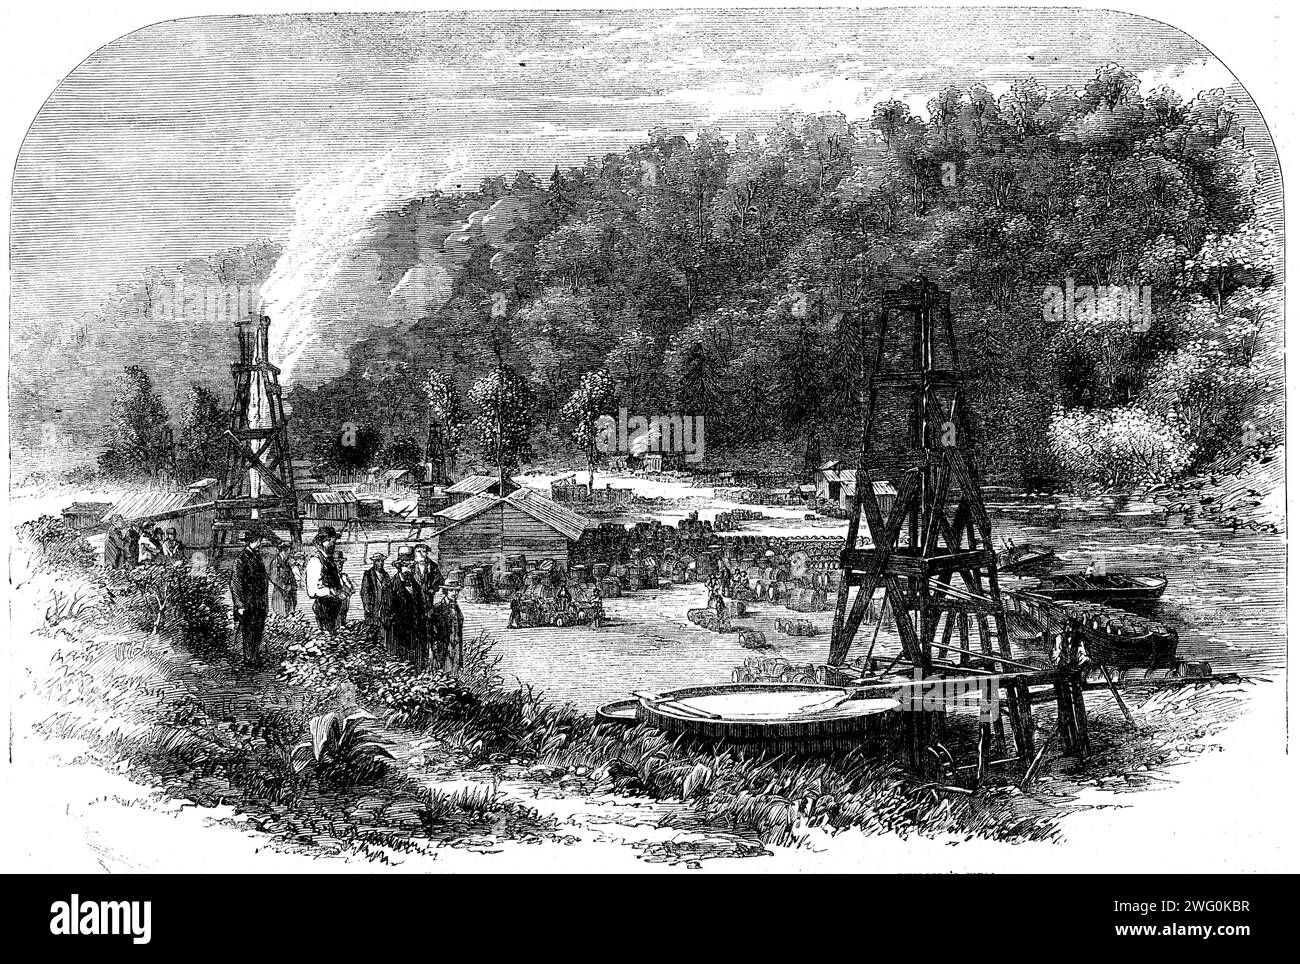 Ölquellen in Tarr Farm, Oil Creek, Venango County, Pennsylvania, 1862. Gravur von Spouting Wells aus Woodford und Phillips nach einer Fotografie von Alexander S. Macrae, Erdöl-Broker. "Im Vordergrund ist ein großer behälter, oder Zisterne, zu sehen, in dem ein ausströmender Brunnen das Öl fließt. Aufgrund der besonderen Leichtigkeit des Erdöls schwimmt es auf der Wasseroberfläche, und alle schädlichen Stoffe, die mit ihm vermischt werden können, werden sofort bis zum Boden ausgefallen, von dem aus es leicht entfernt wird. Das Öl wird in gute, kräftige Fässer mit 40 Gallonen gefüllt und zu den Raffinerien zu Hause oder exportiert Stockfoto